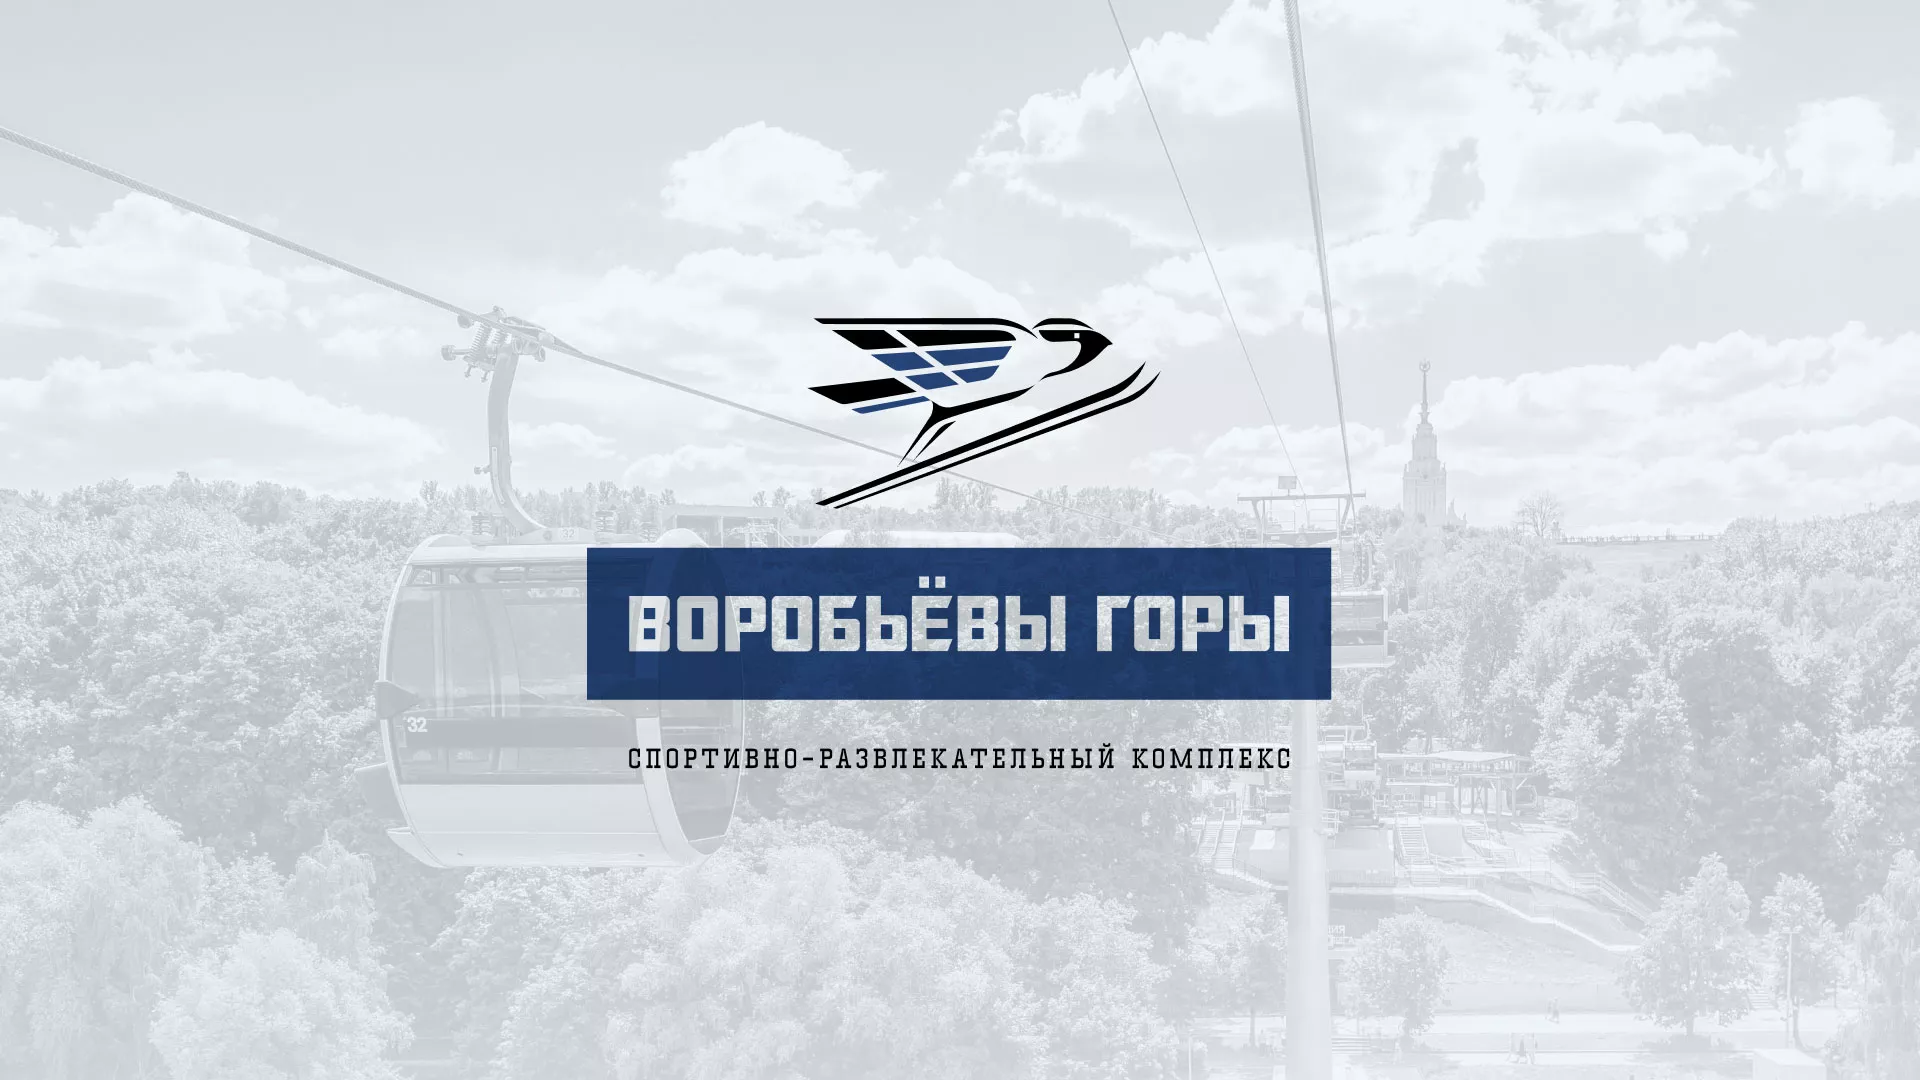 Разработка сайта в Свирске для спортивно-развлекательного комплекса «Воробьёвы горы»